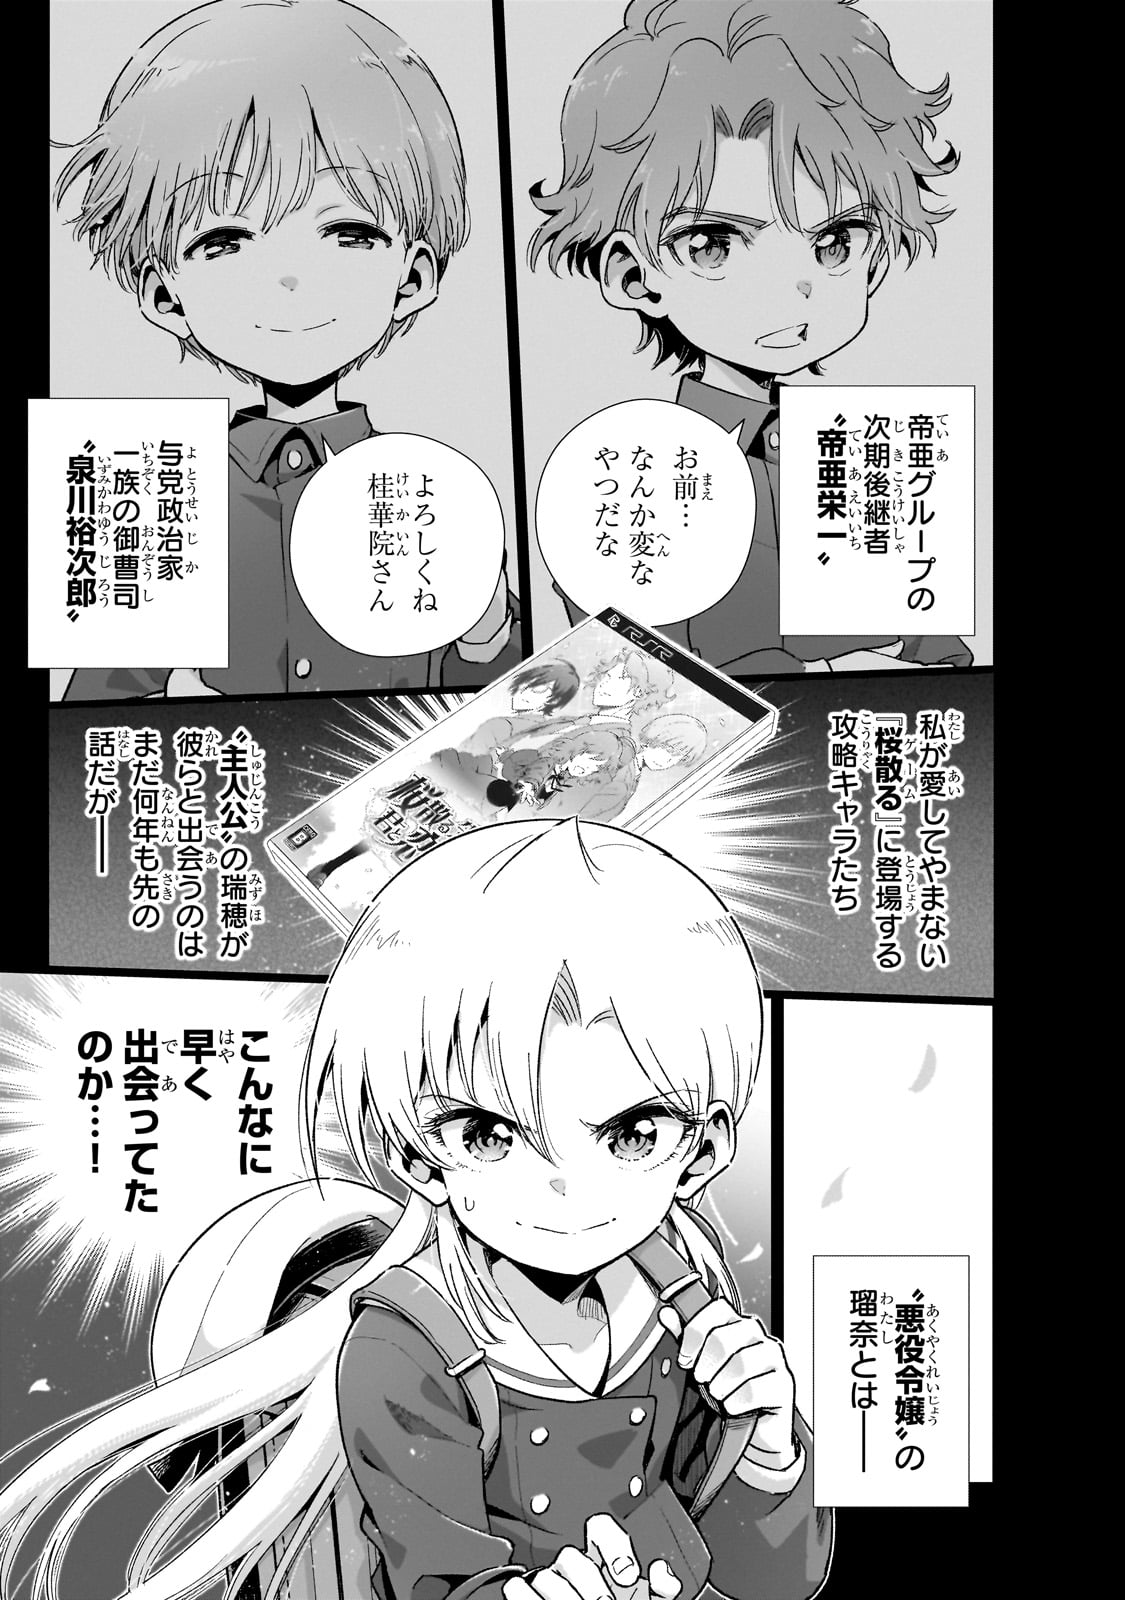 Gendai Shakai de Otome Game no Akuyaku Reijou wo suru no wa Chotto Taihen - Chapter 14 - Page 1